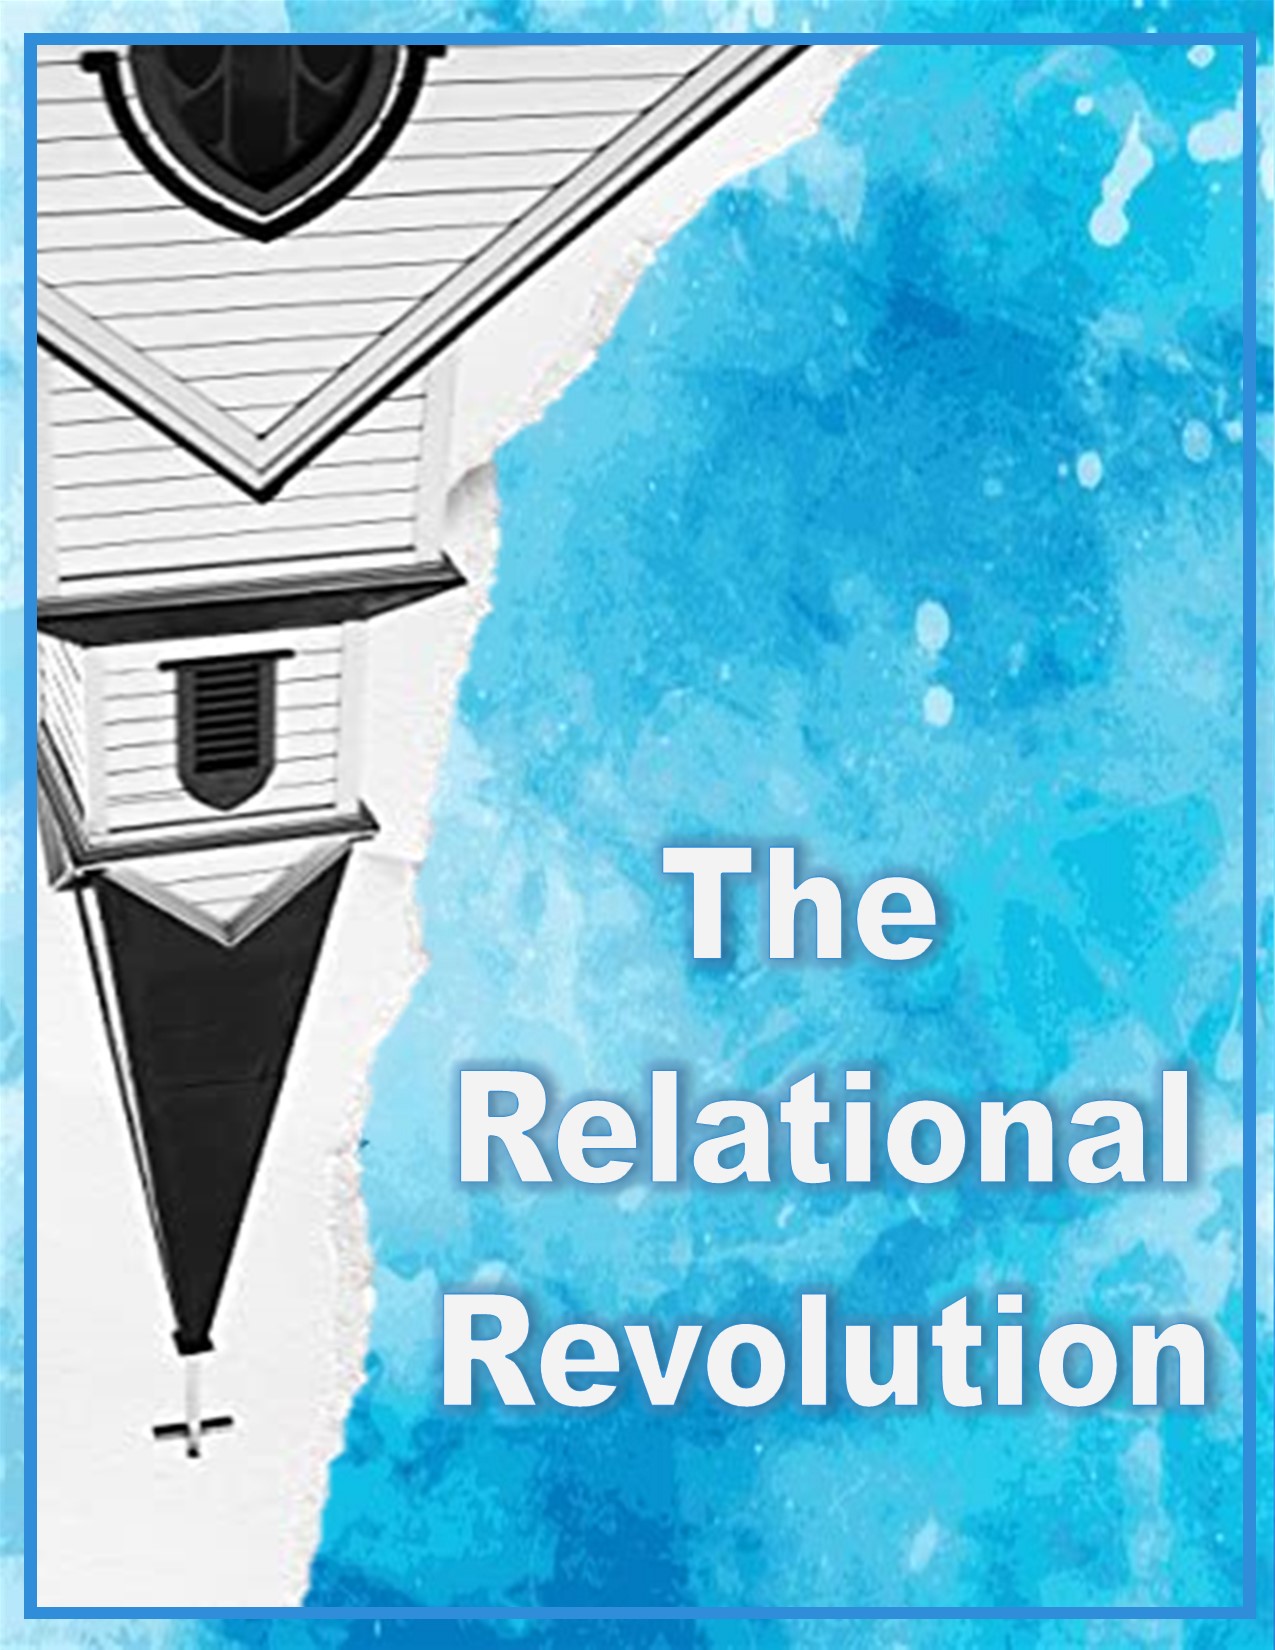 The Relational Revolution- Relationship vs Religion